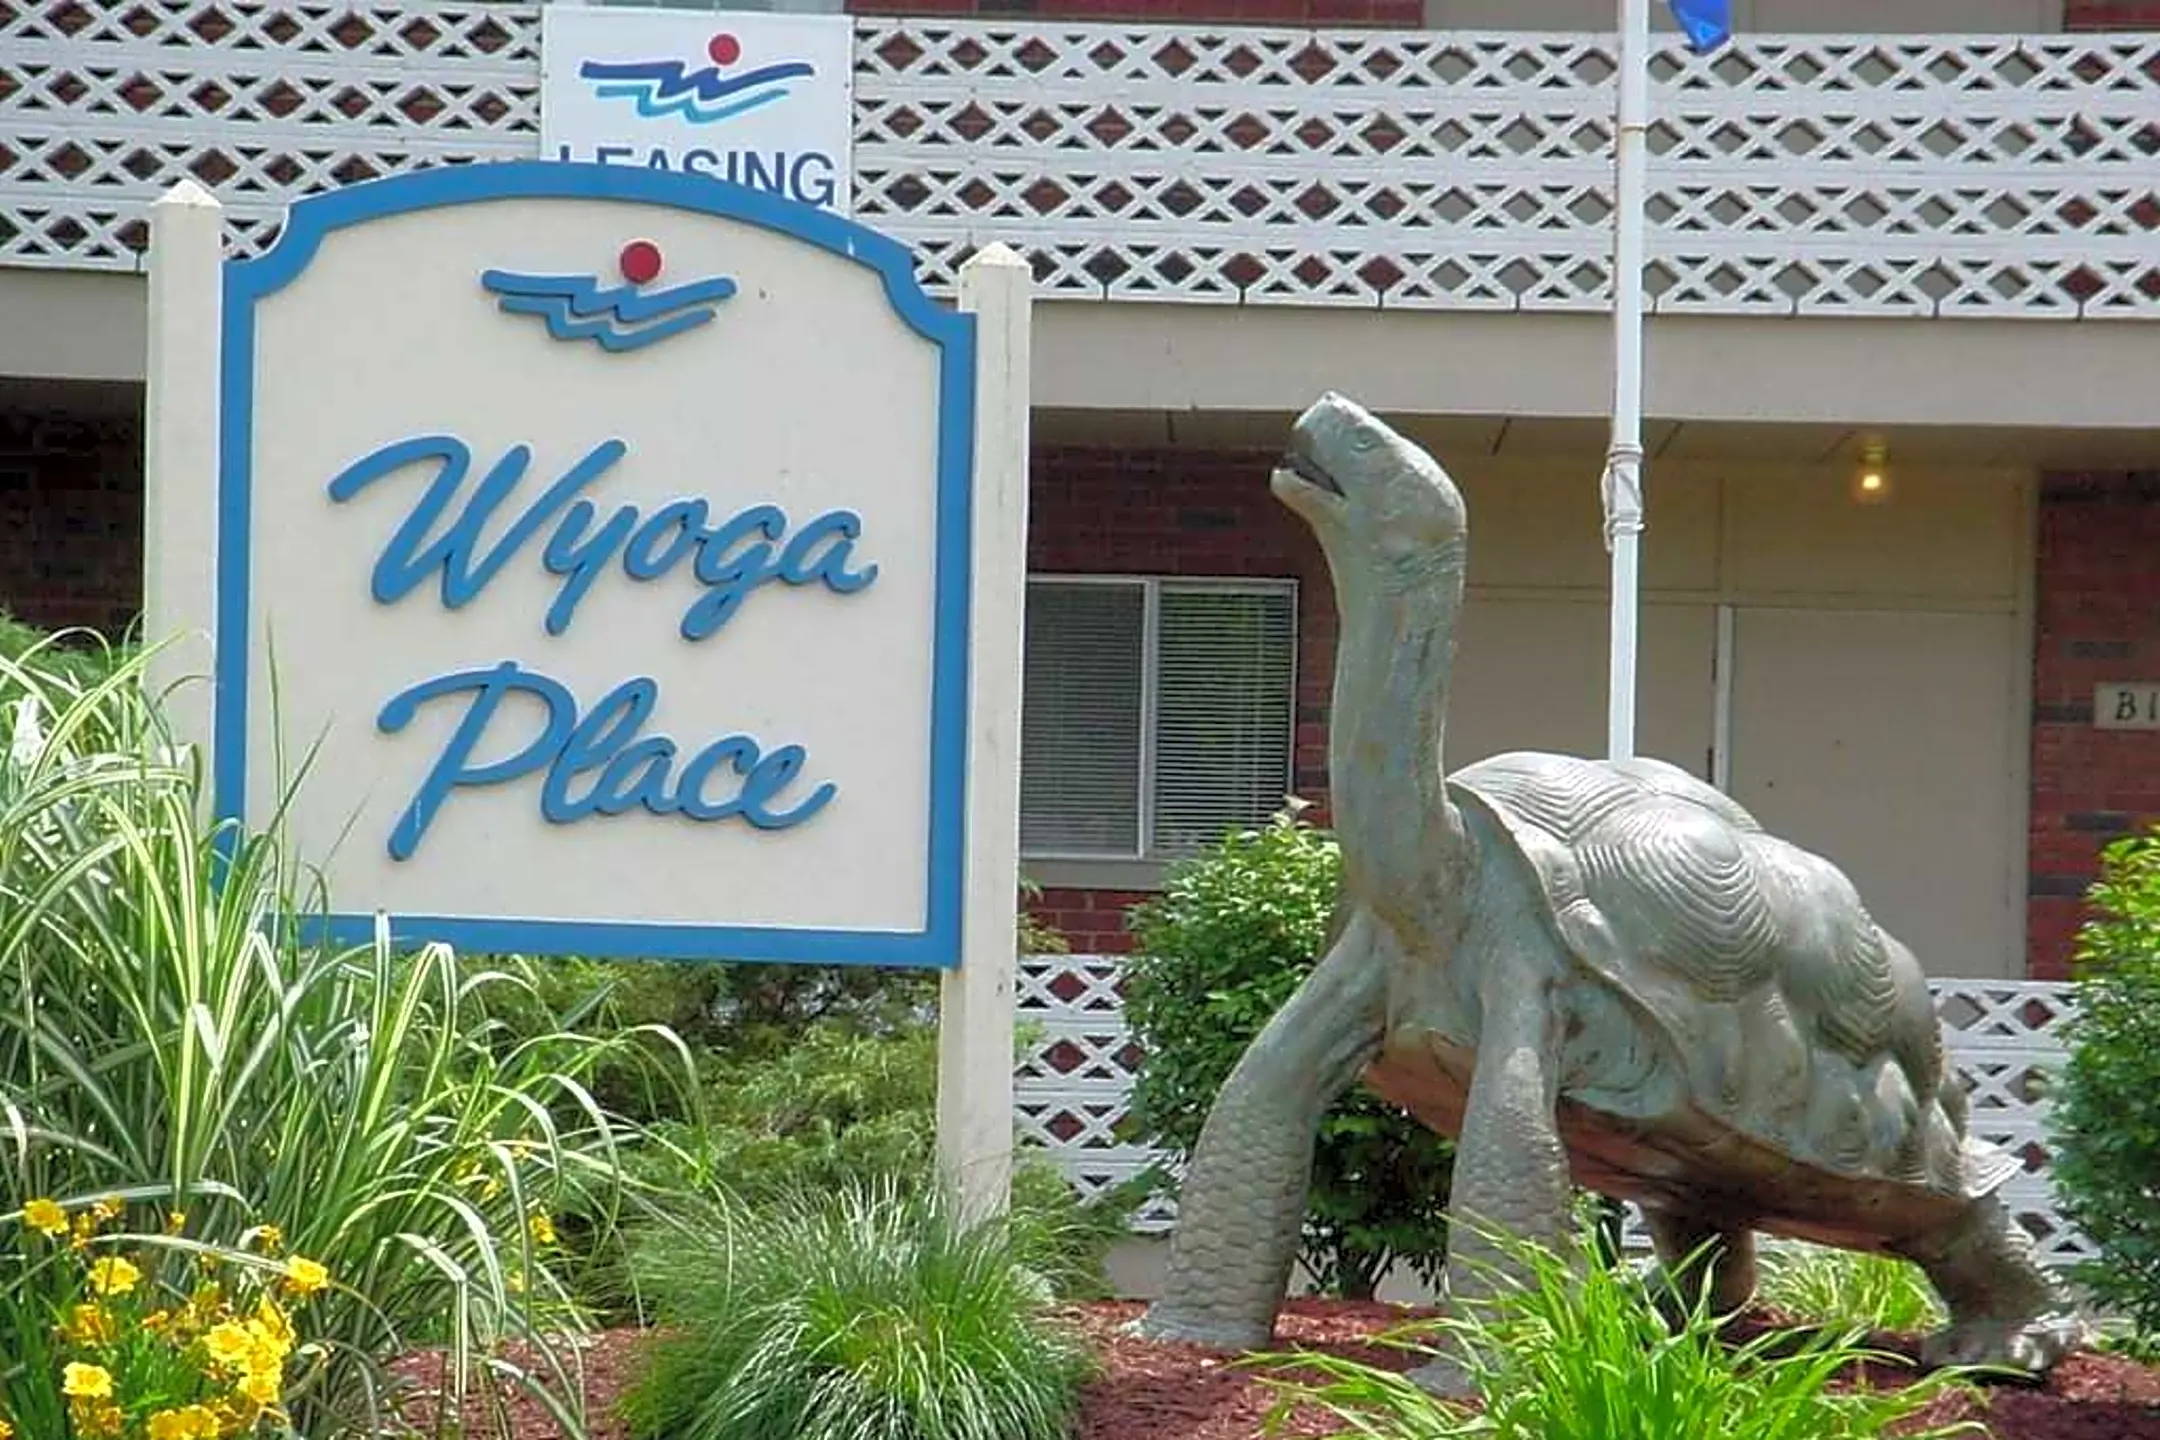 Community Signage - Wyoga Place - Stow, OH